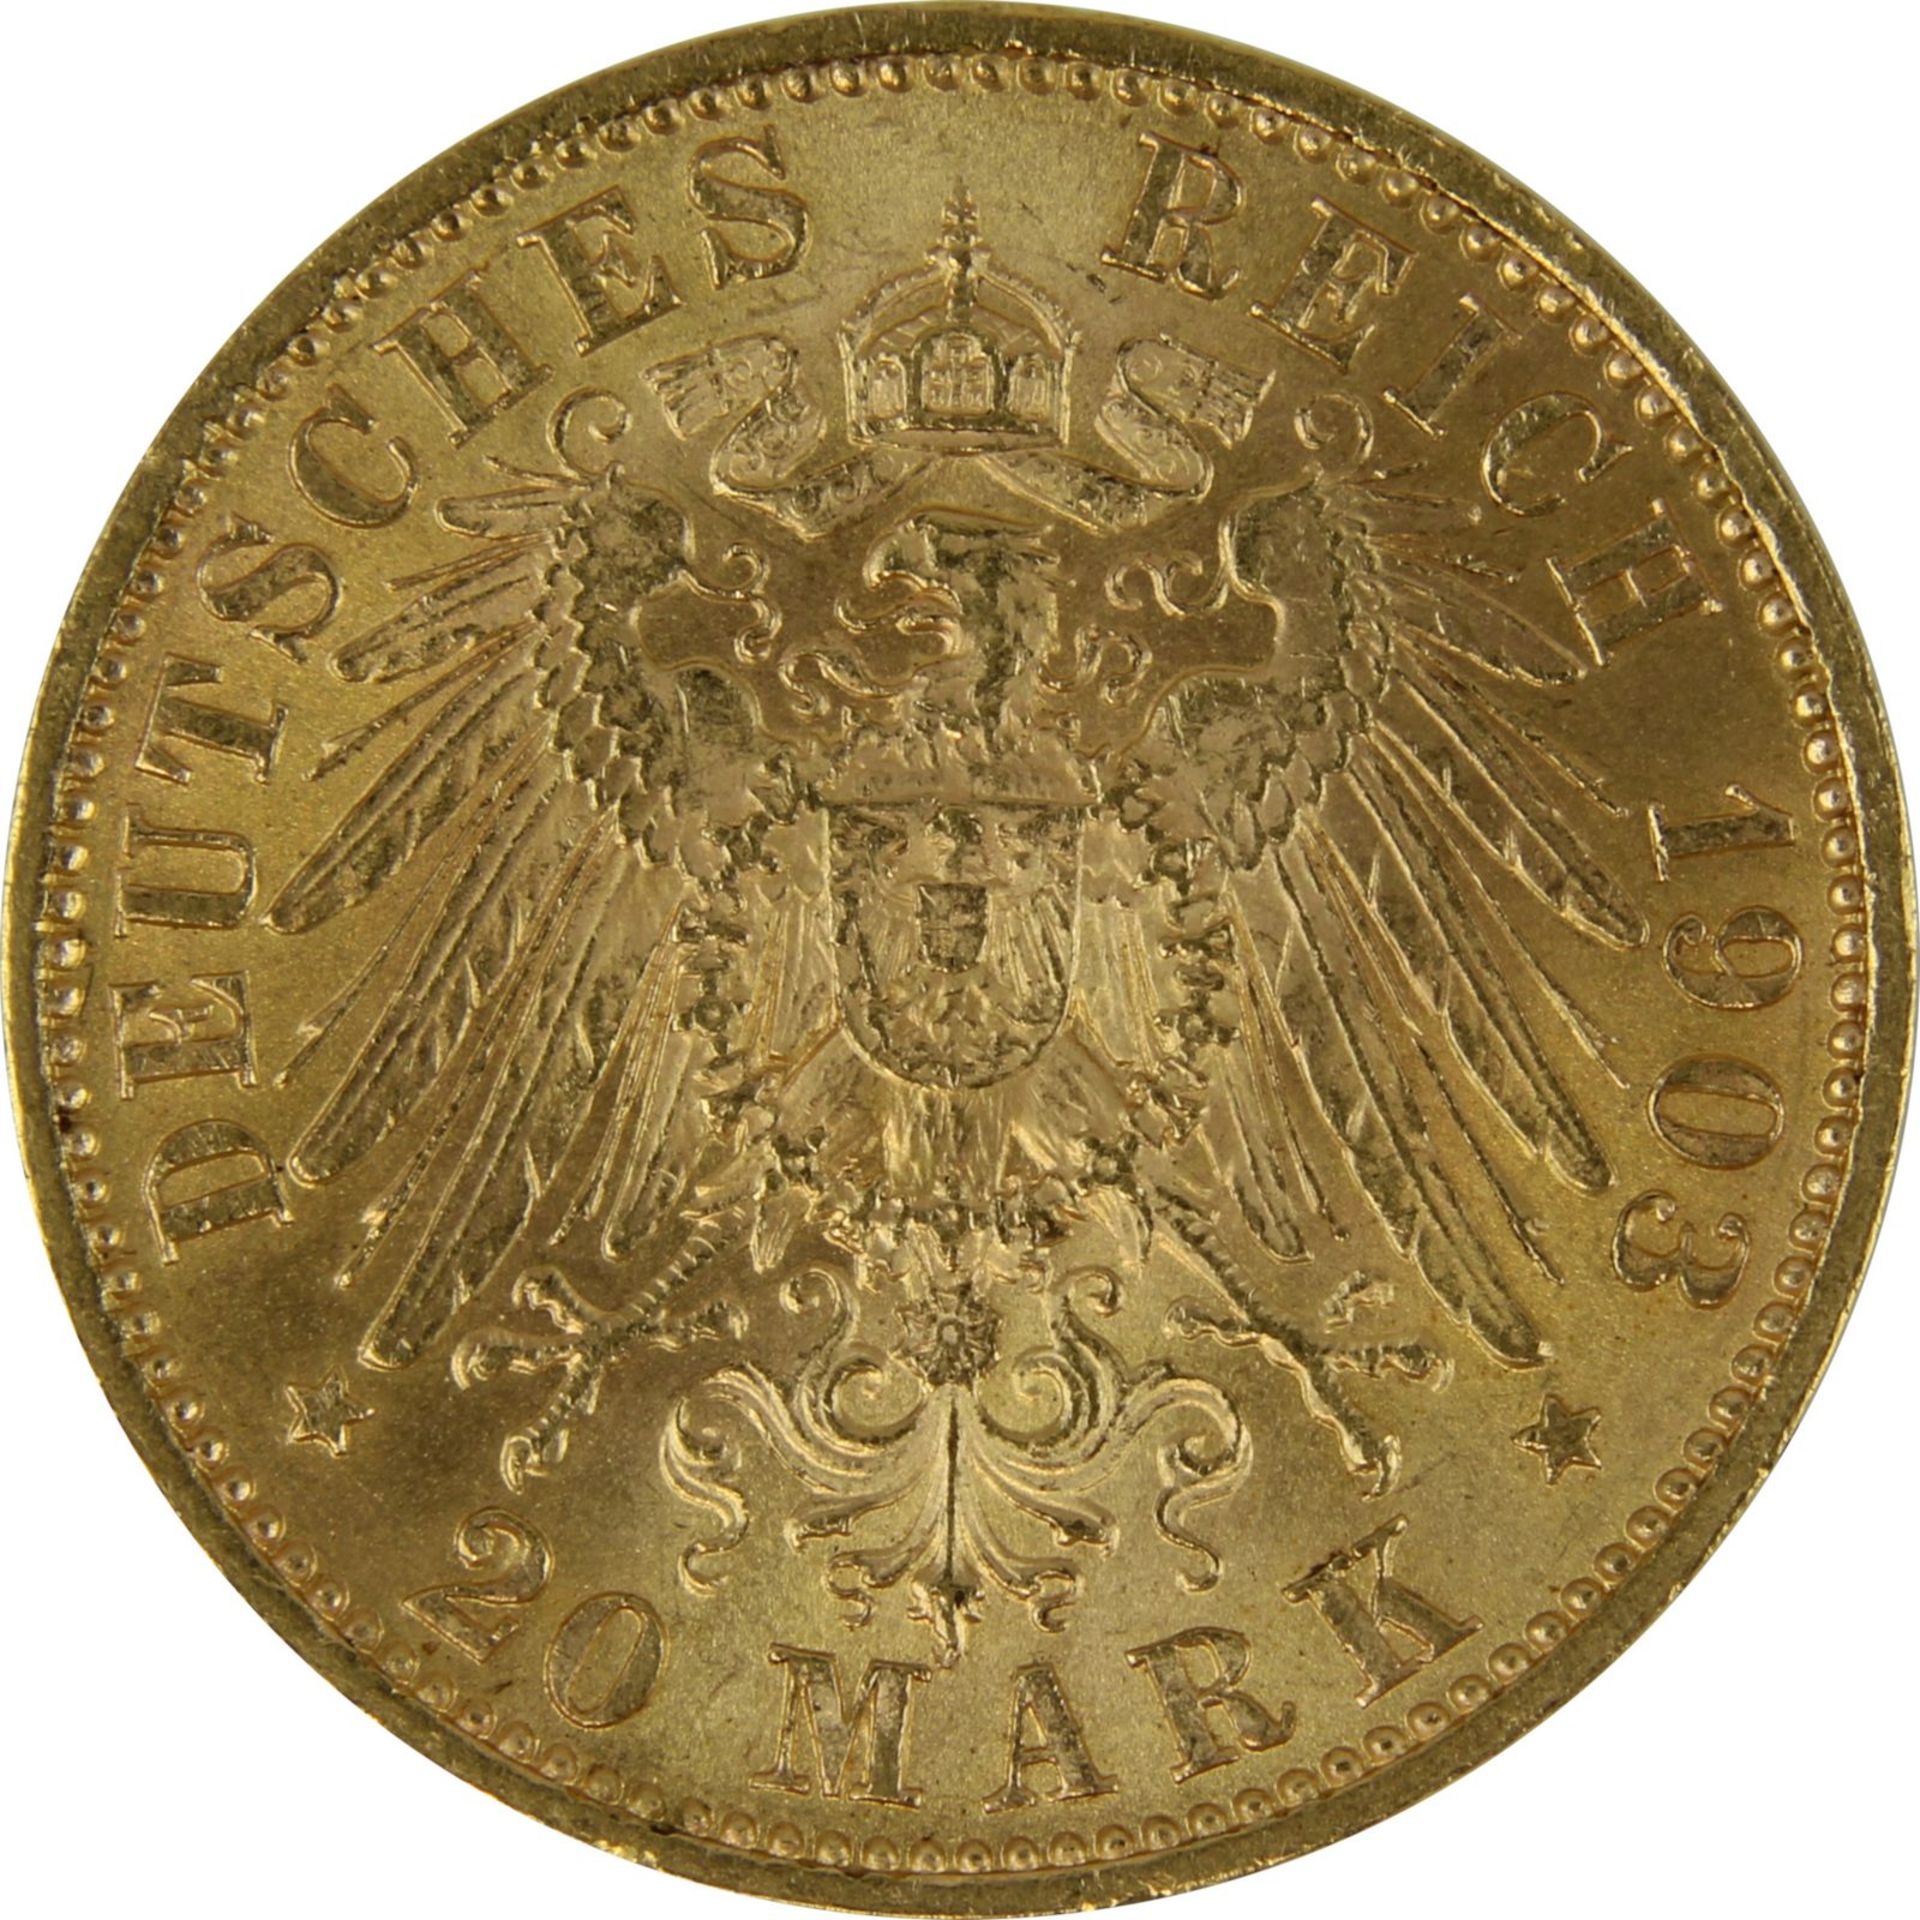 Goldmünze zu 20 Mark, Sachsen - Deutsches Reich 1903, Avers: Kopf Georg König von Sachsen nach re. - Image 3 of 3